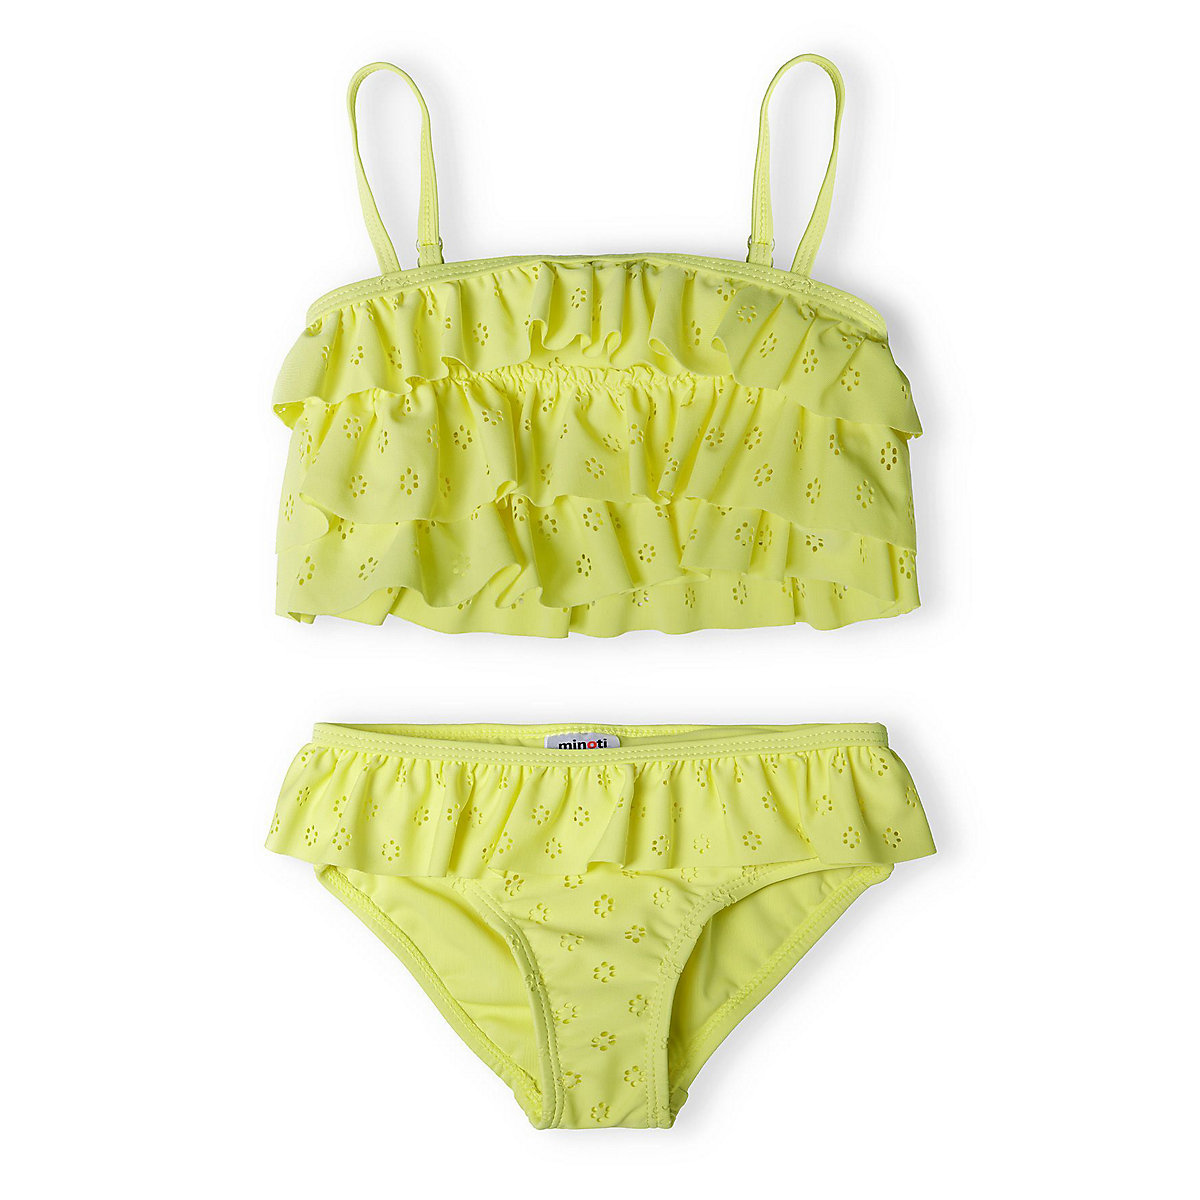 MINOTI 2tlg. Outfit: Bustier-Bikini 14swim 20 für Mädchen gelb